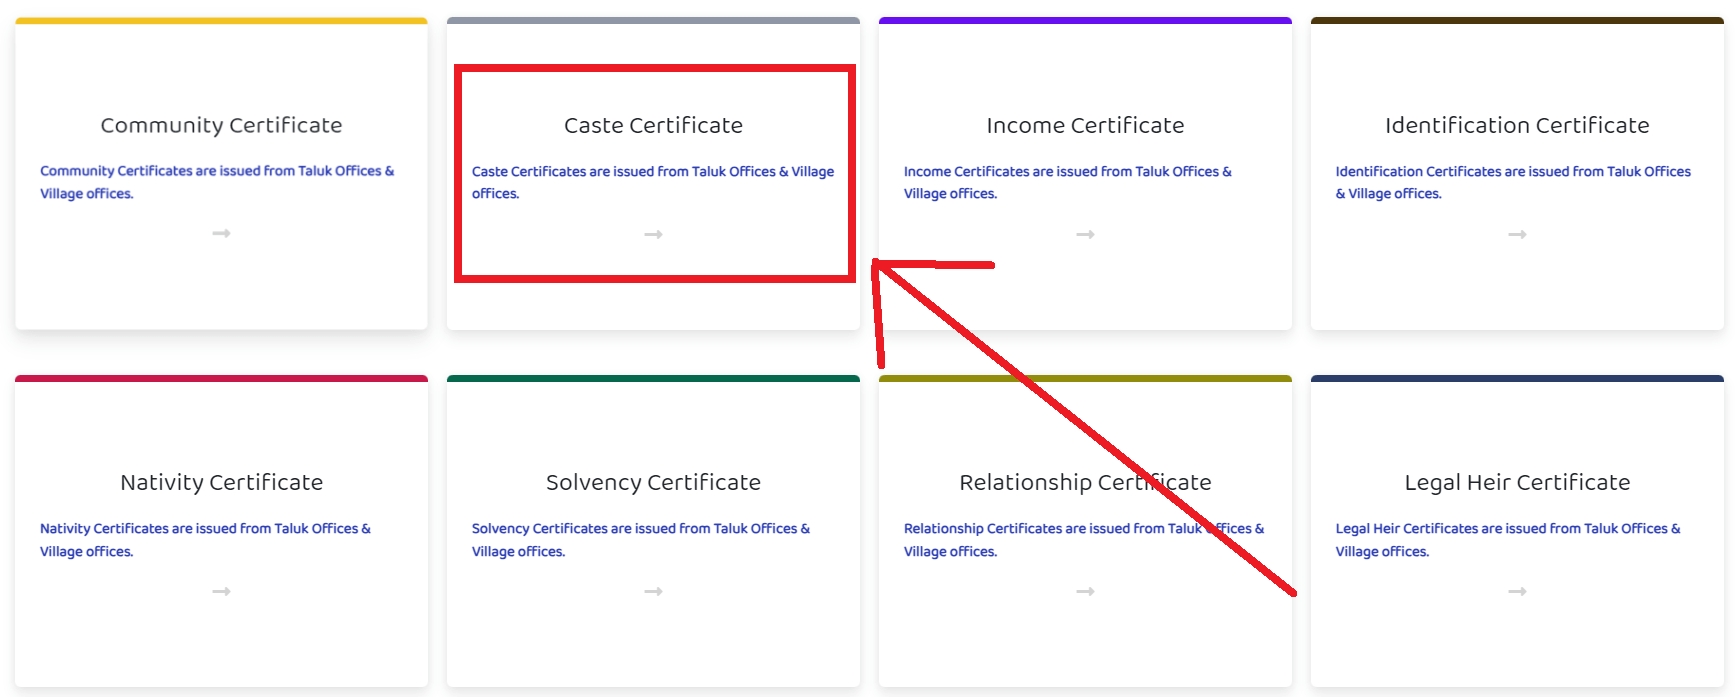 Apply Online for Caste Certificate in Kerala